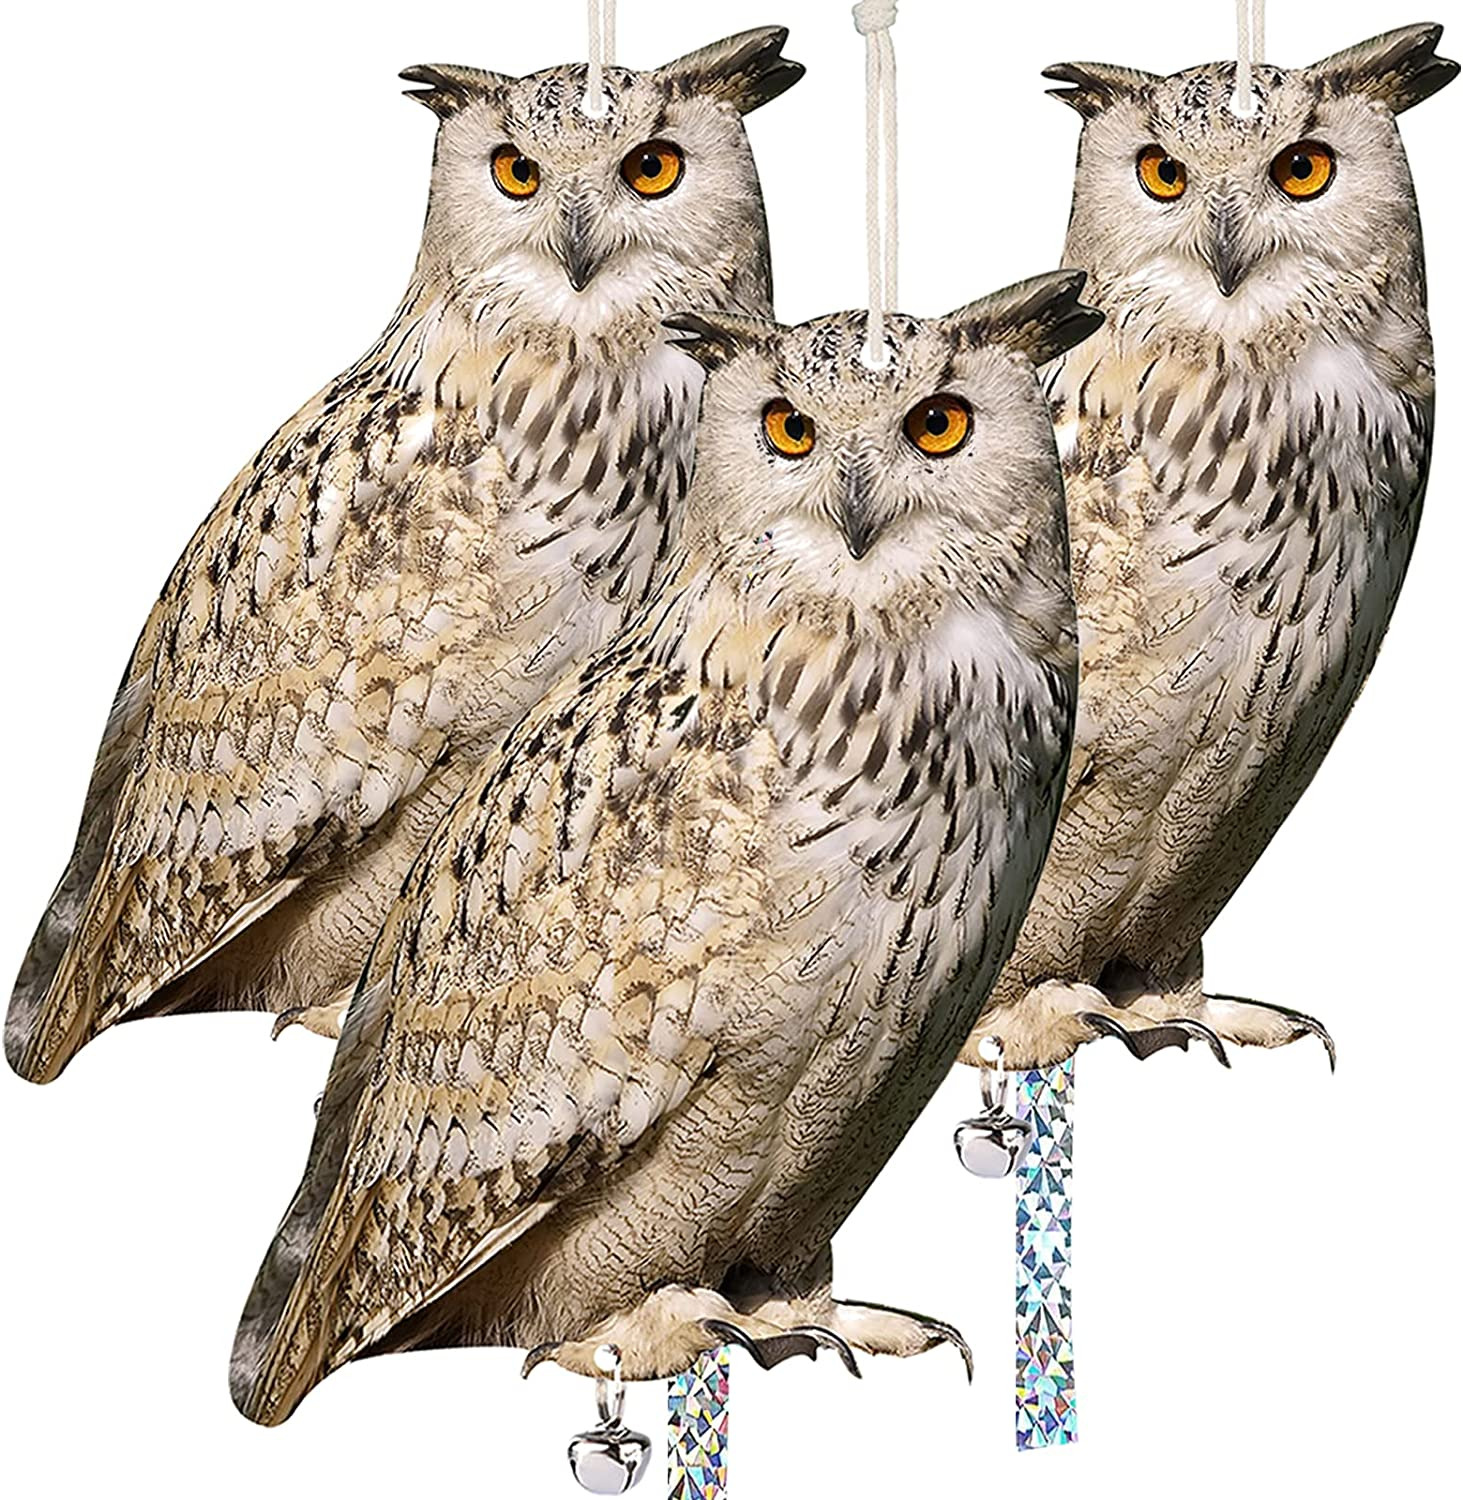 Owl to Keep Birds Away, 3 Pack Bird Scare Owl Fake Owl, Reflective Hanging Bird